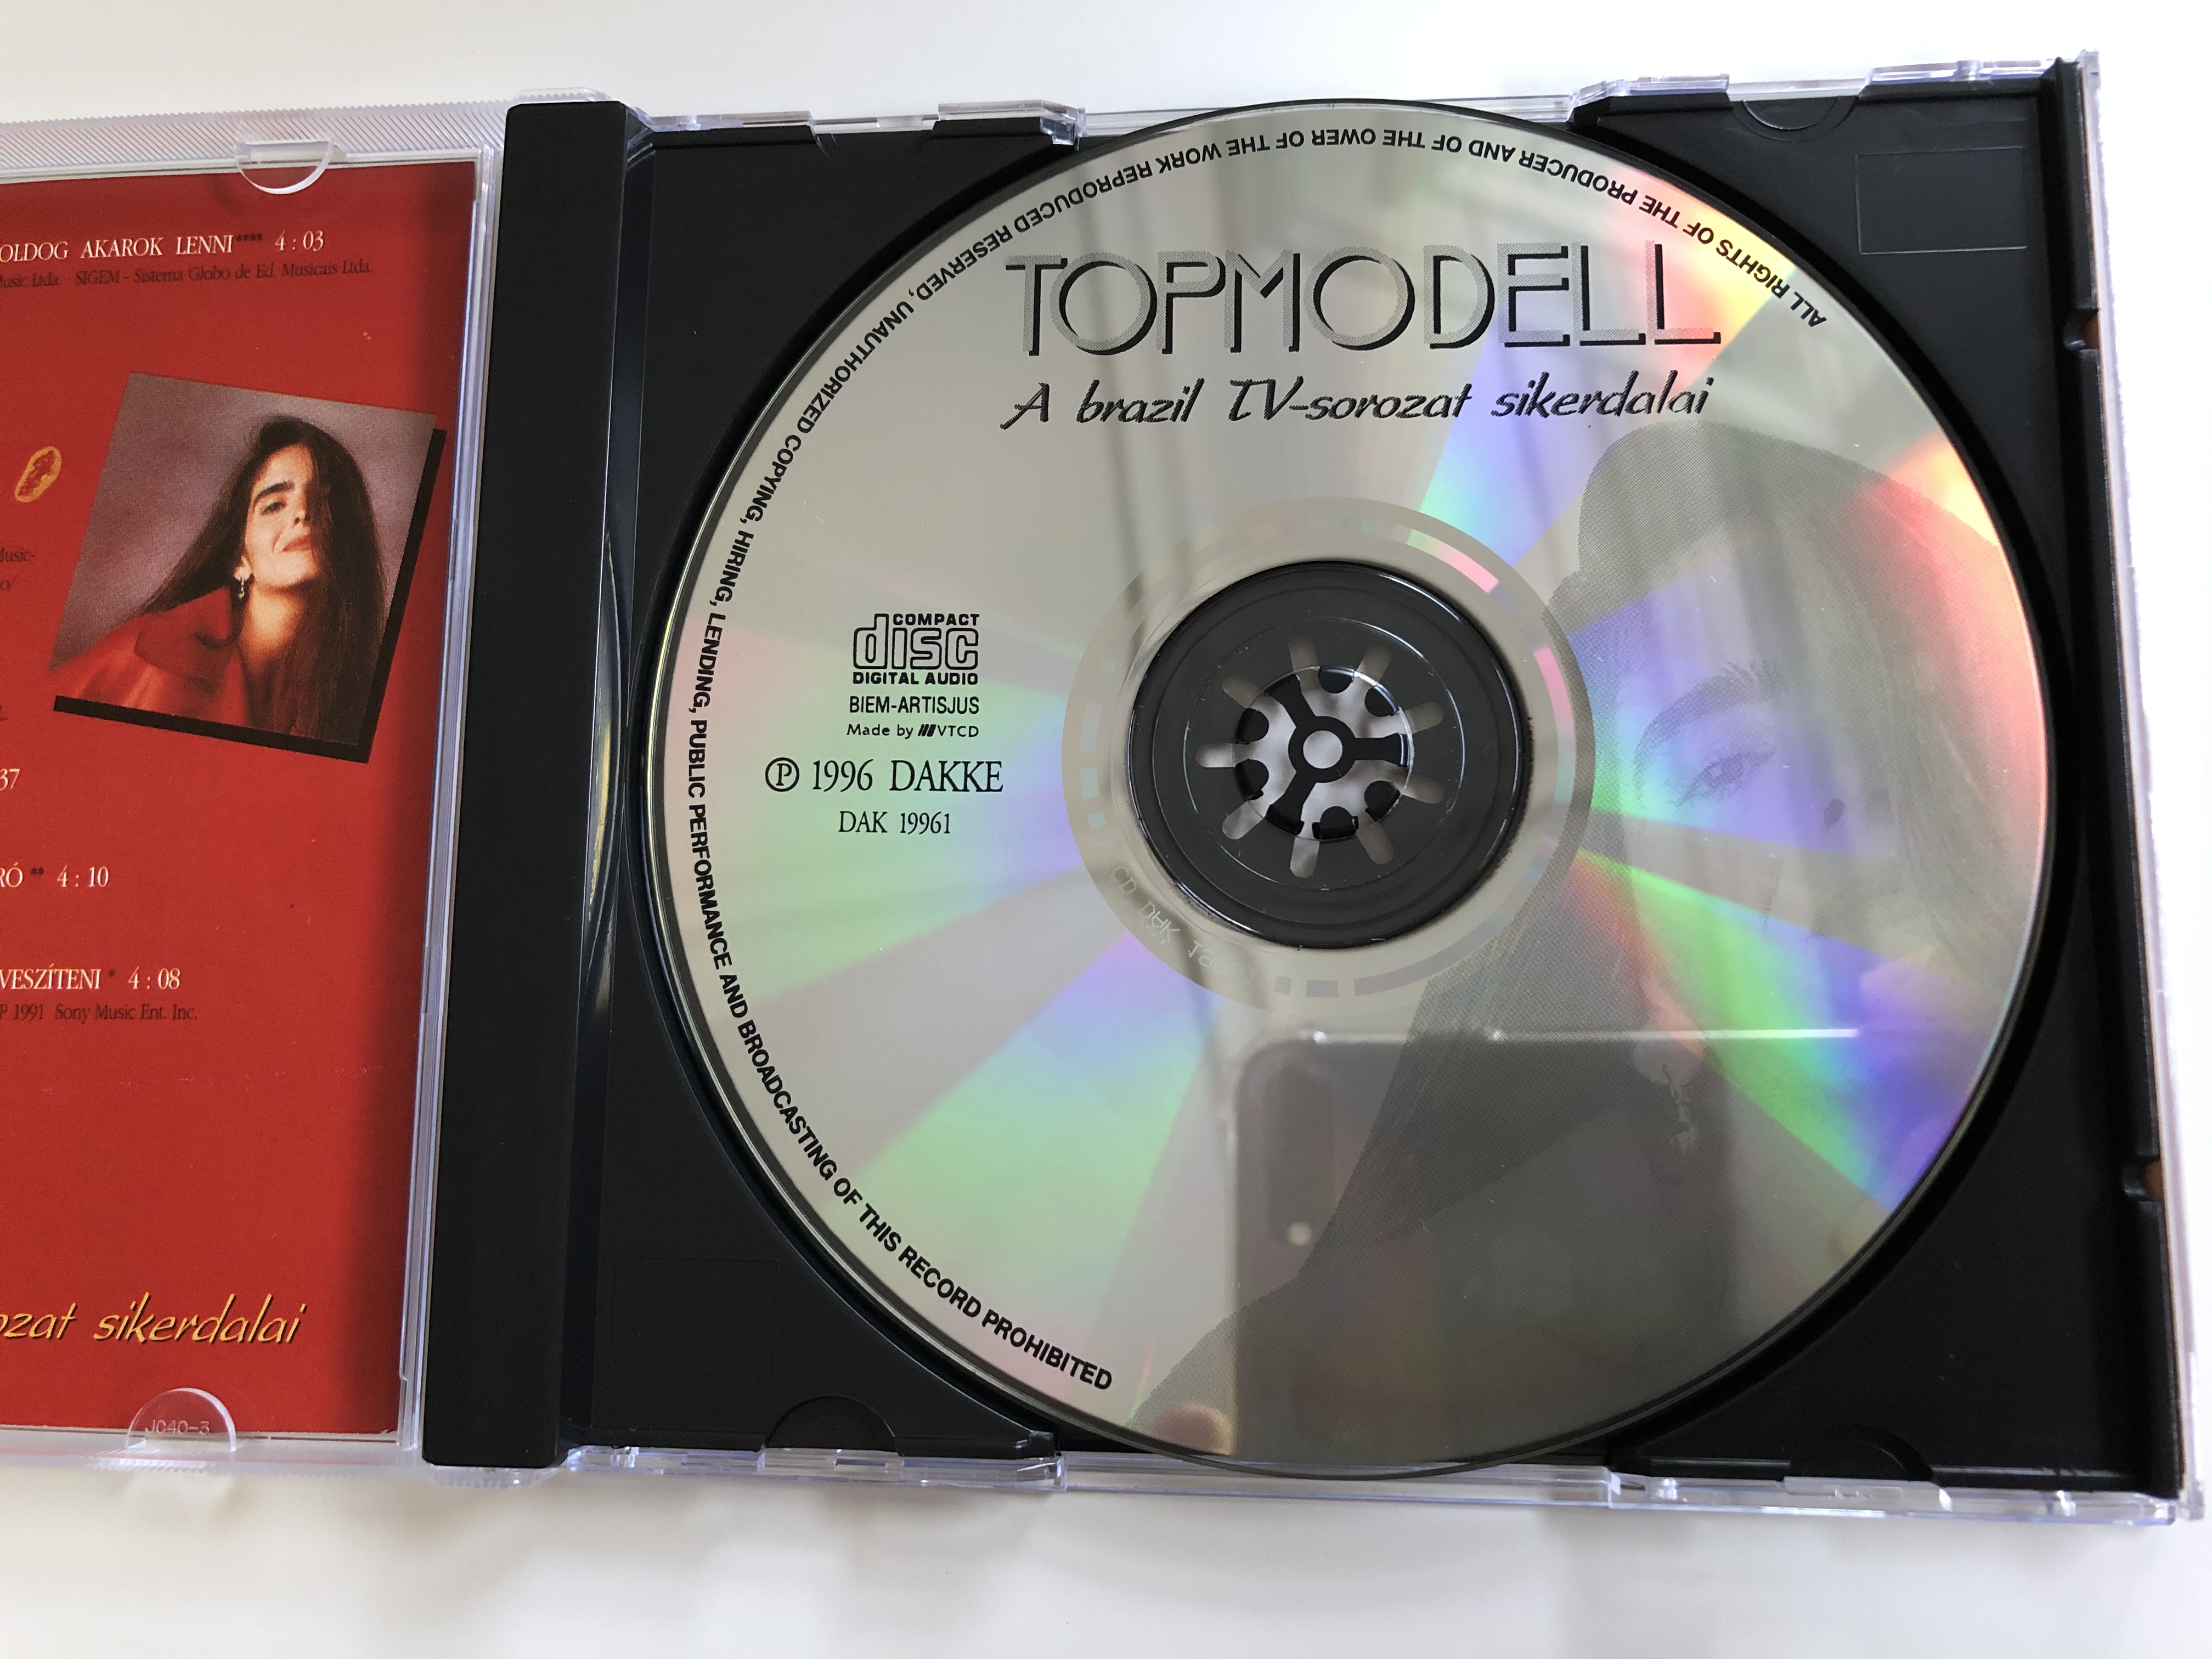 topmodell-a-tv-sorozat-sikerdalai-gloria-estefan-fine-young-cannibals-gerard-joling-gerendas-peter-kozremu-kodesvel-dakke-audio-cd-1996-dak-19961-3-.jpg